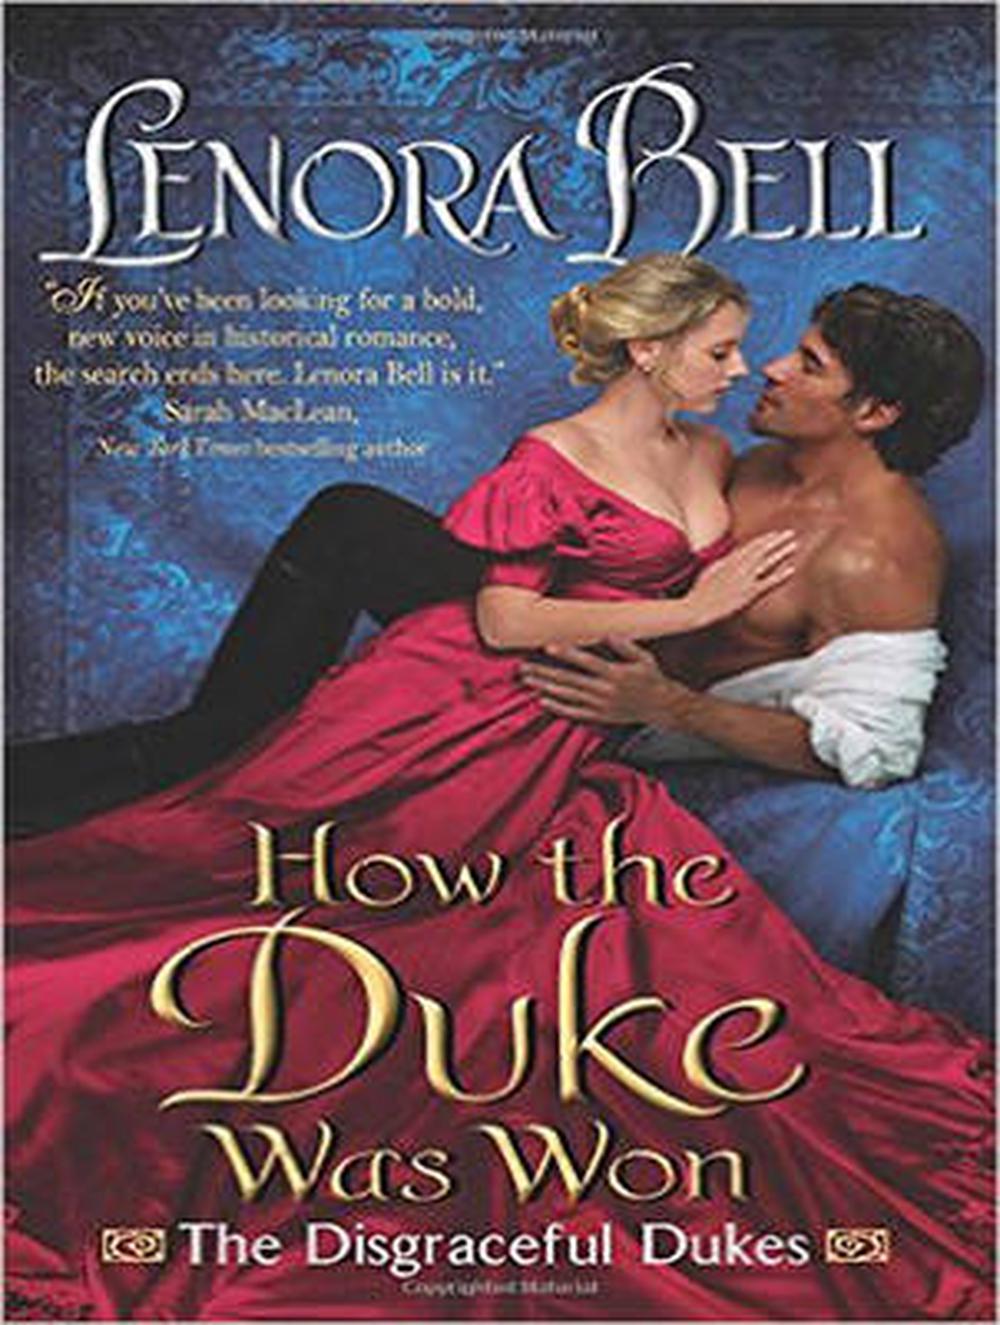 One Fine Duke by Lenora Bell